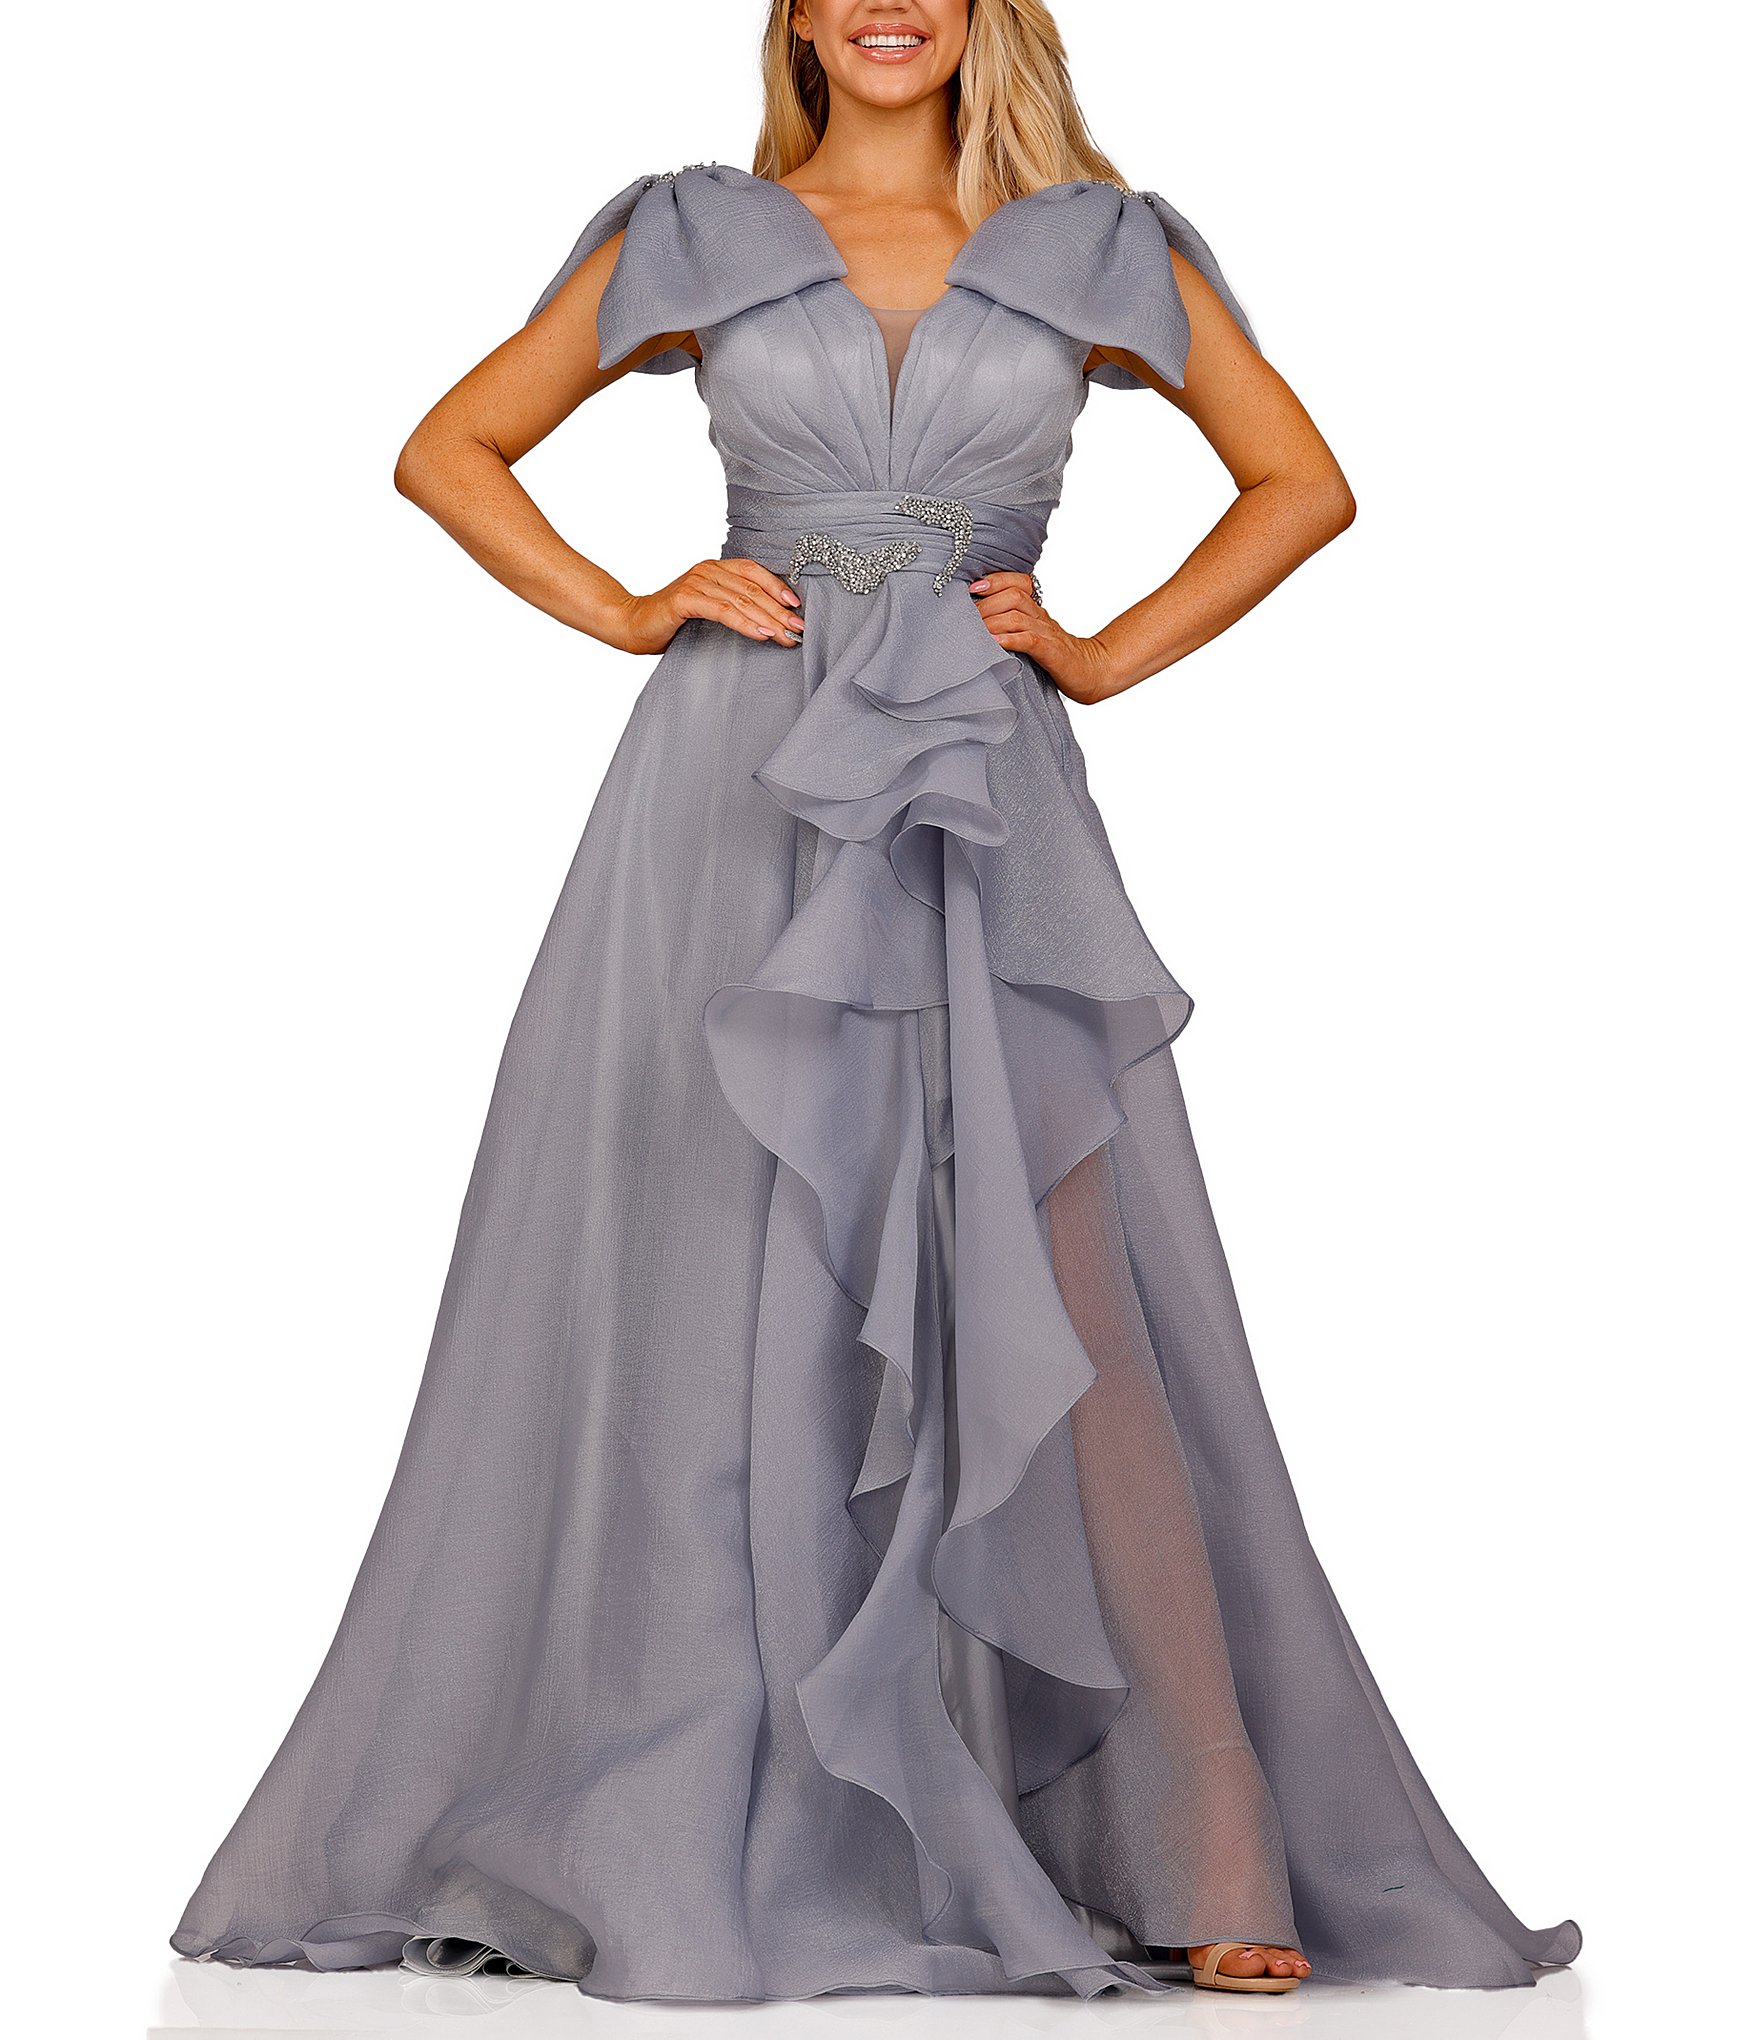 ralph lauren clearance: Women's Formal Dresses & Evening Gowns | Dillard's